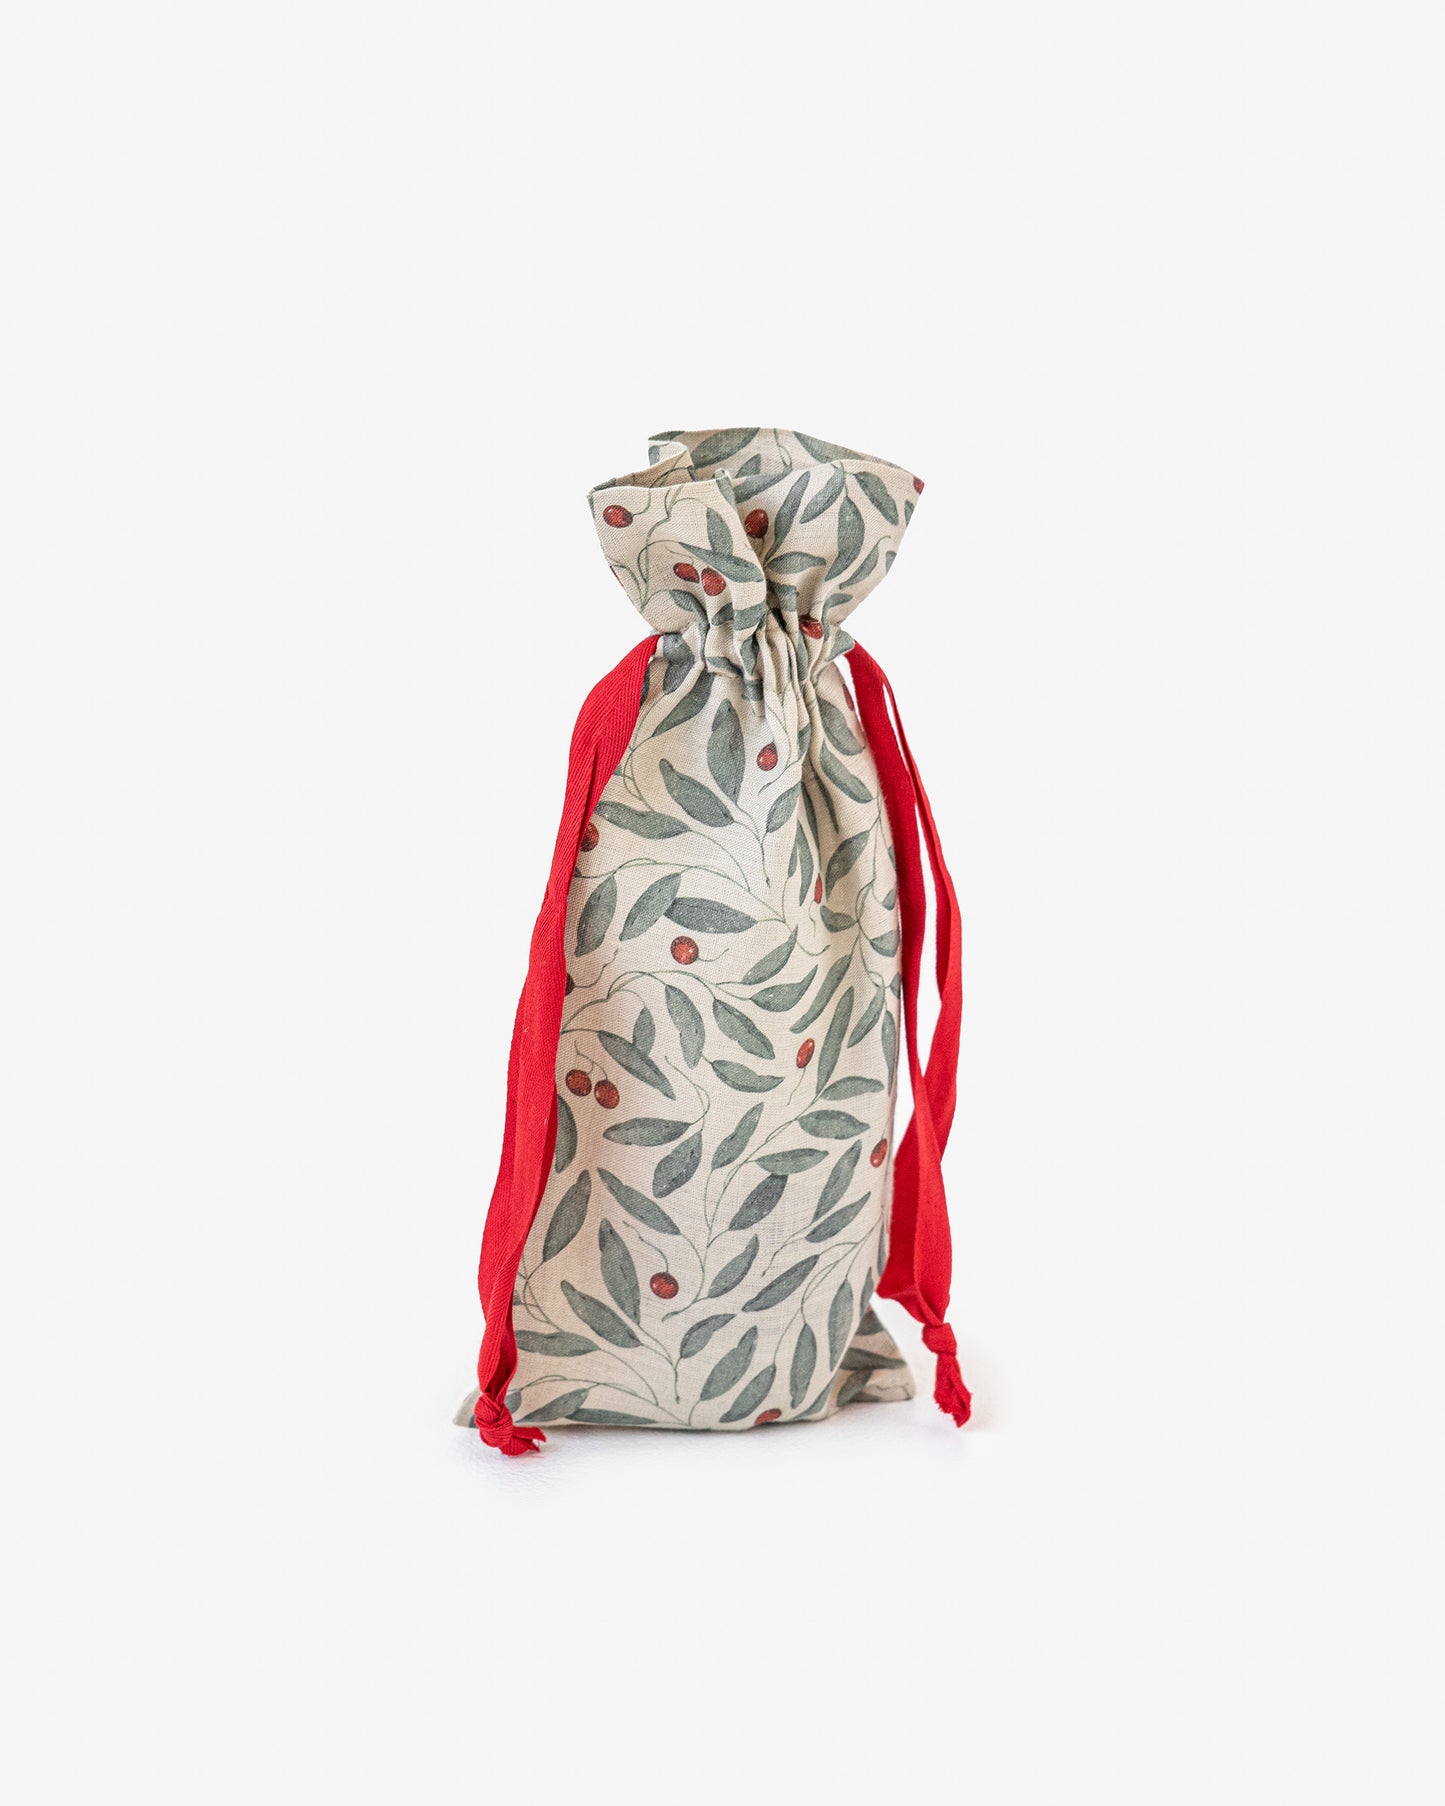 Wine bottle bag in Mistletoe print - MagicLinen